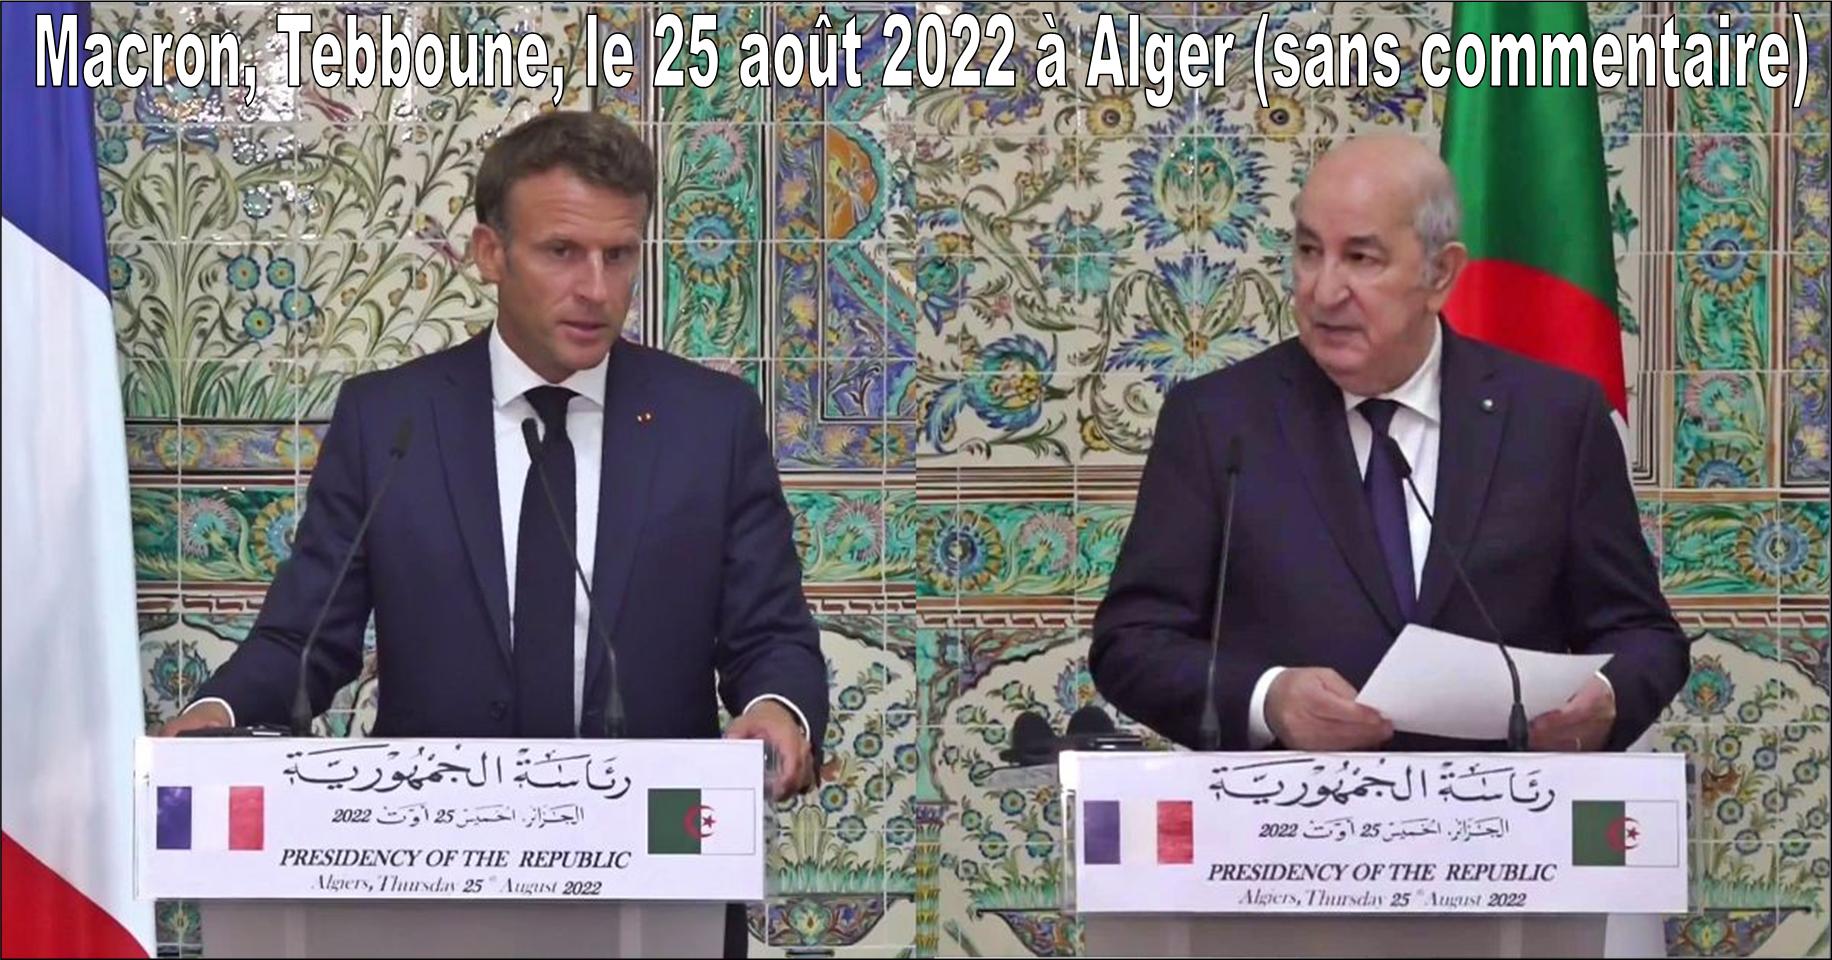 Macron-Tebboune à Alger, l'anglais sur les pupitres, le 25 aout 2022